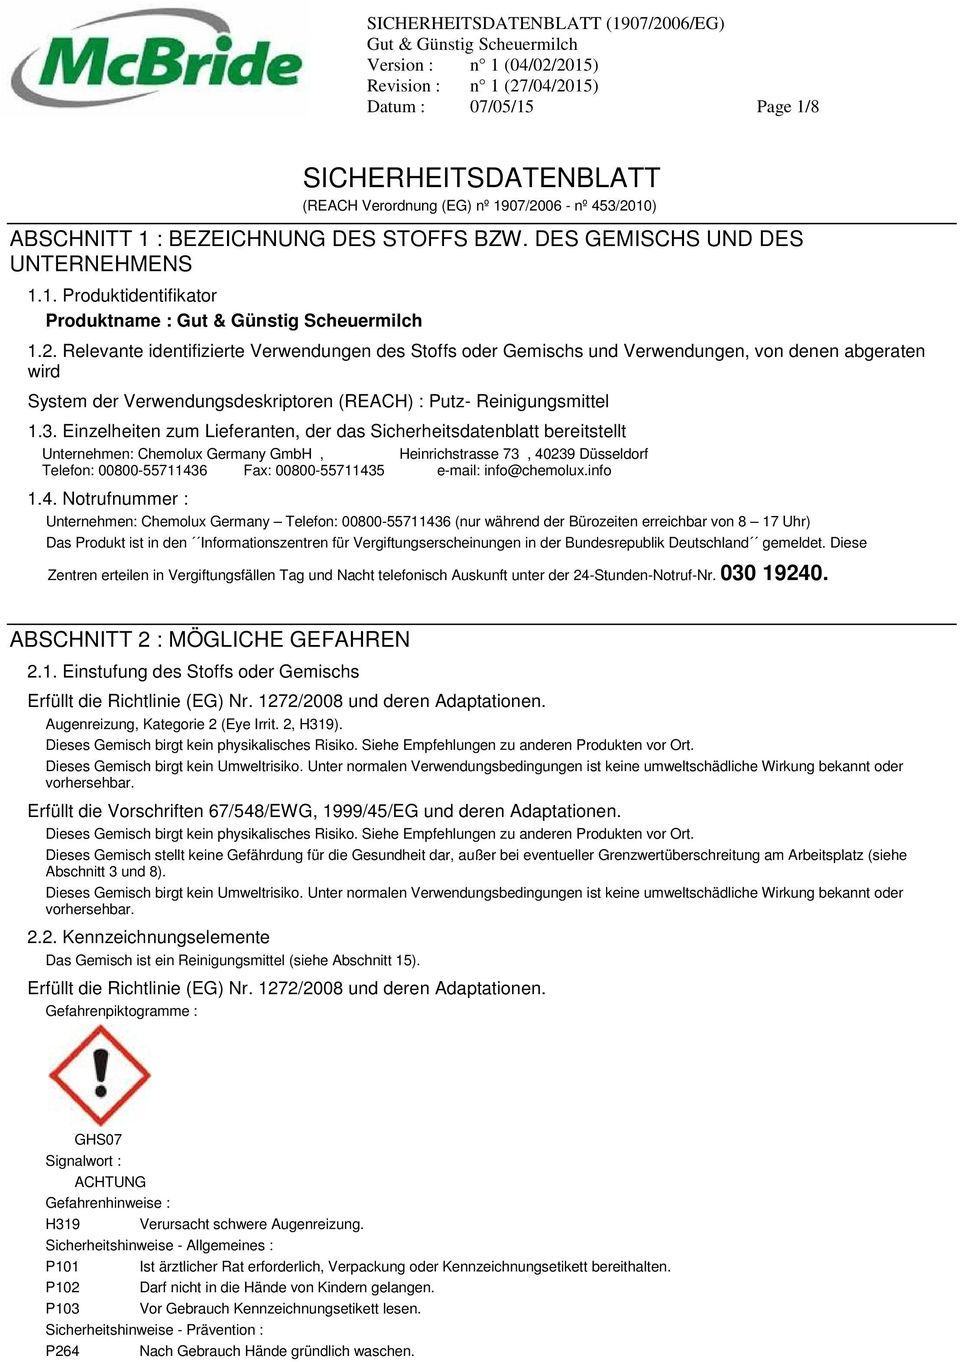 Einzelheiten zum Lieferanten, der das Sicherheitsdatenblatt bereitstellt Unternehmen: Chemolux Germany GmbH, Heinrichstrasse 73, 40239 Düsseldorf Telefon: 00800-55711436 Fax: 00800-55711435 e-mail: